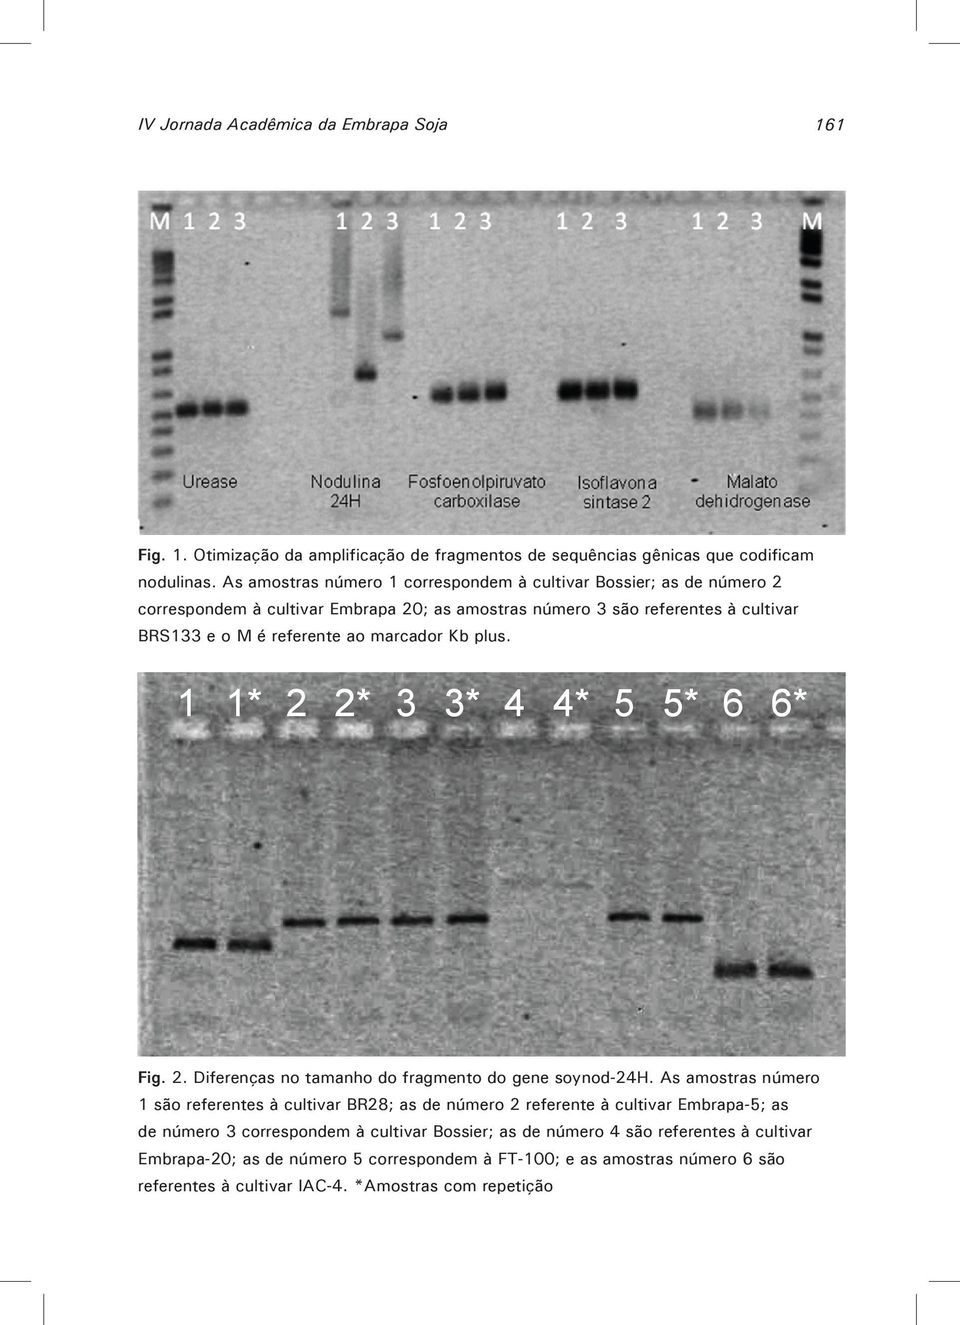 marcador Kb plus. 1 1* 2 2* 3 3* 4 4* 5 5* 6 6* Fig. 2. Diferenças no tamanho do fragmento do gene soynod-24h.